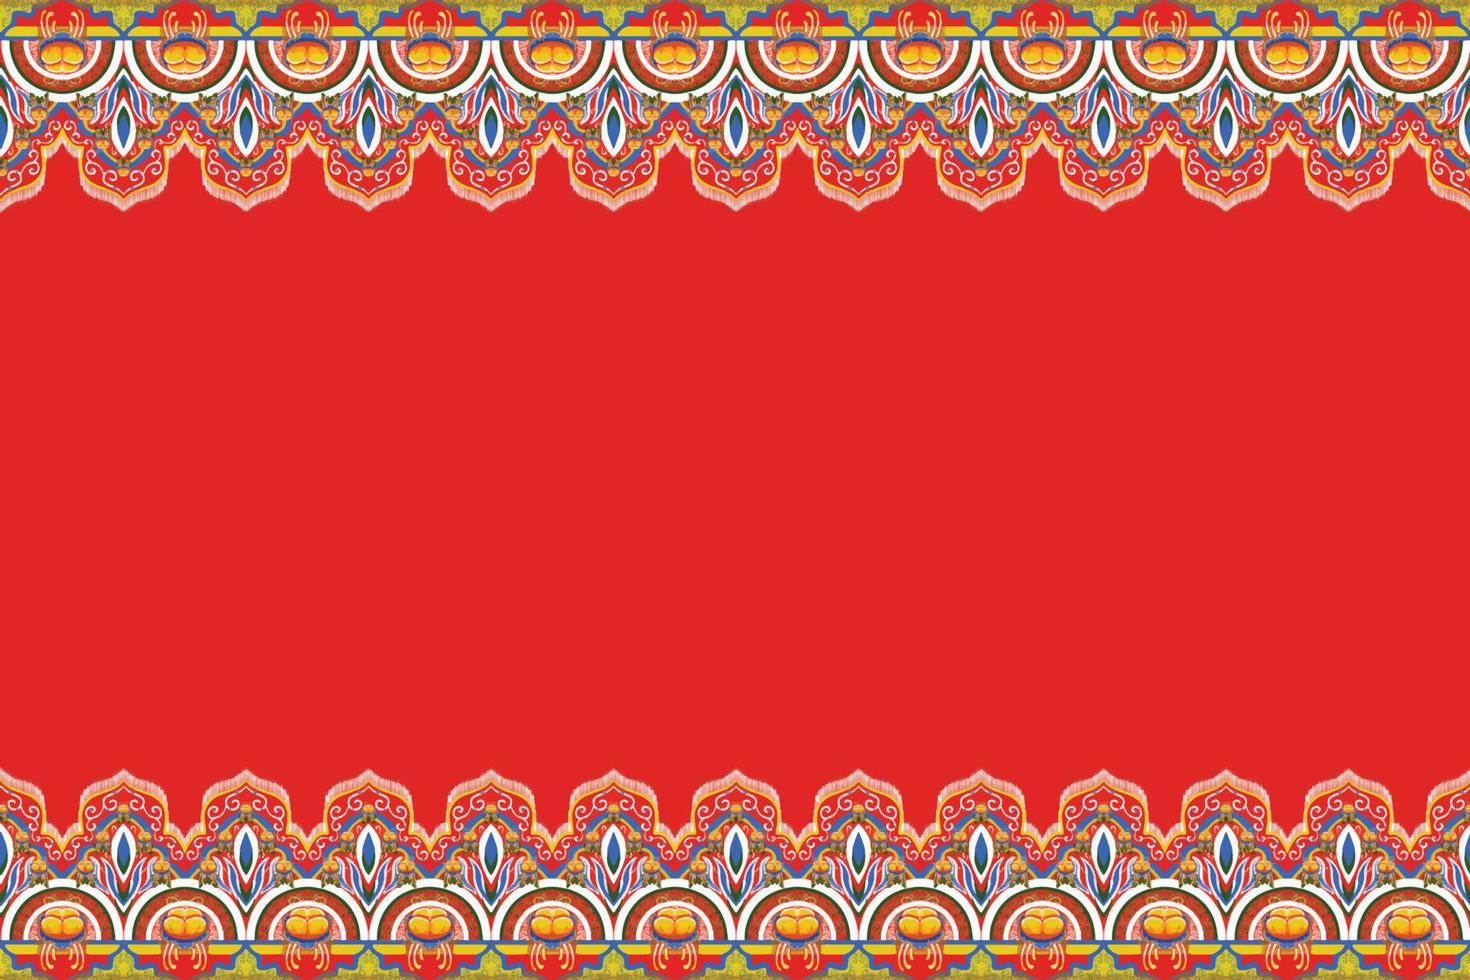 amarelo, azul, flor em vermelho alaranjado. design tradicional de padrão oriental étnico geométrico para plano de fundo, tapete, papel de parede, roupas, embrulho, batik, tecido, estilo de bordado de ilustração vetorial vetor